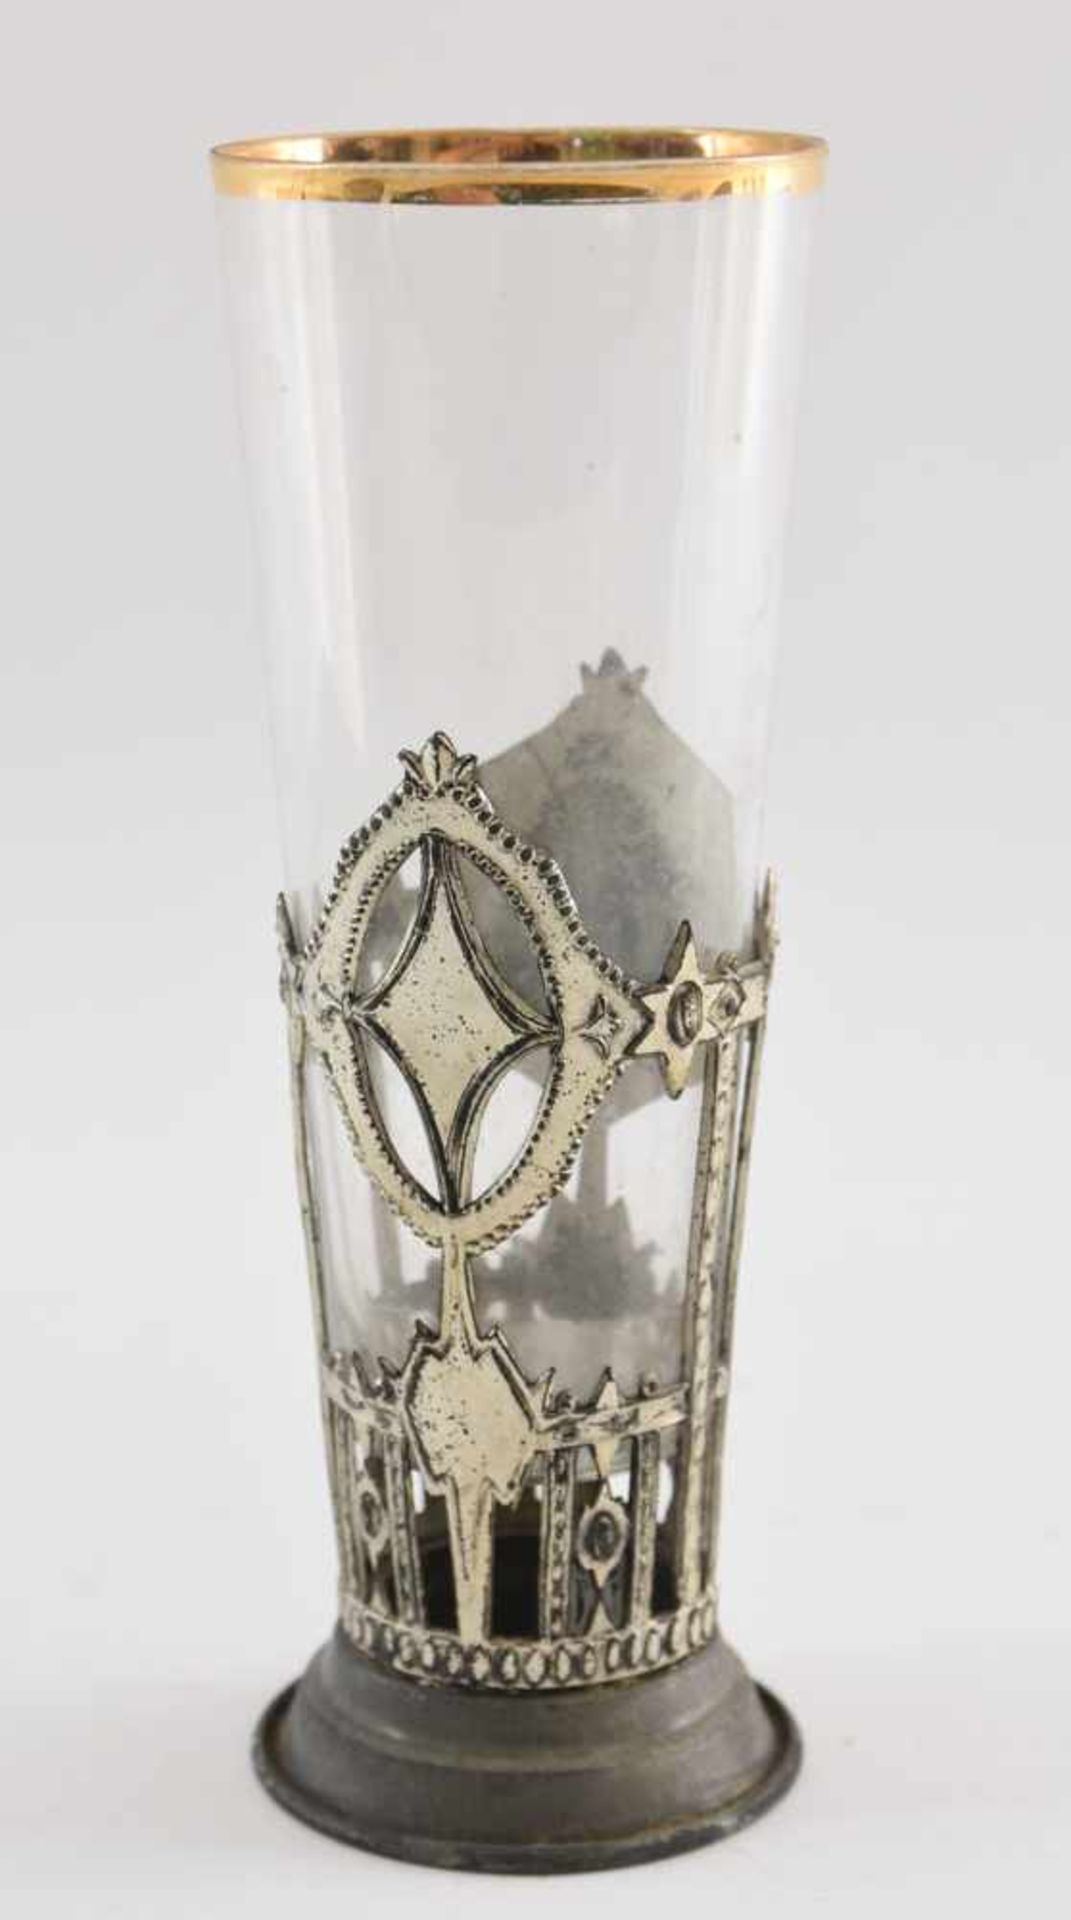 GLAS "ZUM ANDENKEN", mit Metall beschlagen und goldstaffiert, um 1900 Konischer Glaskörper schwebend - Bild 2 aus 3